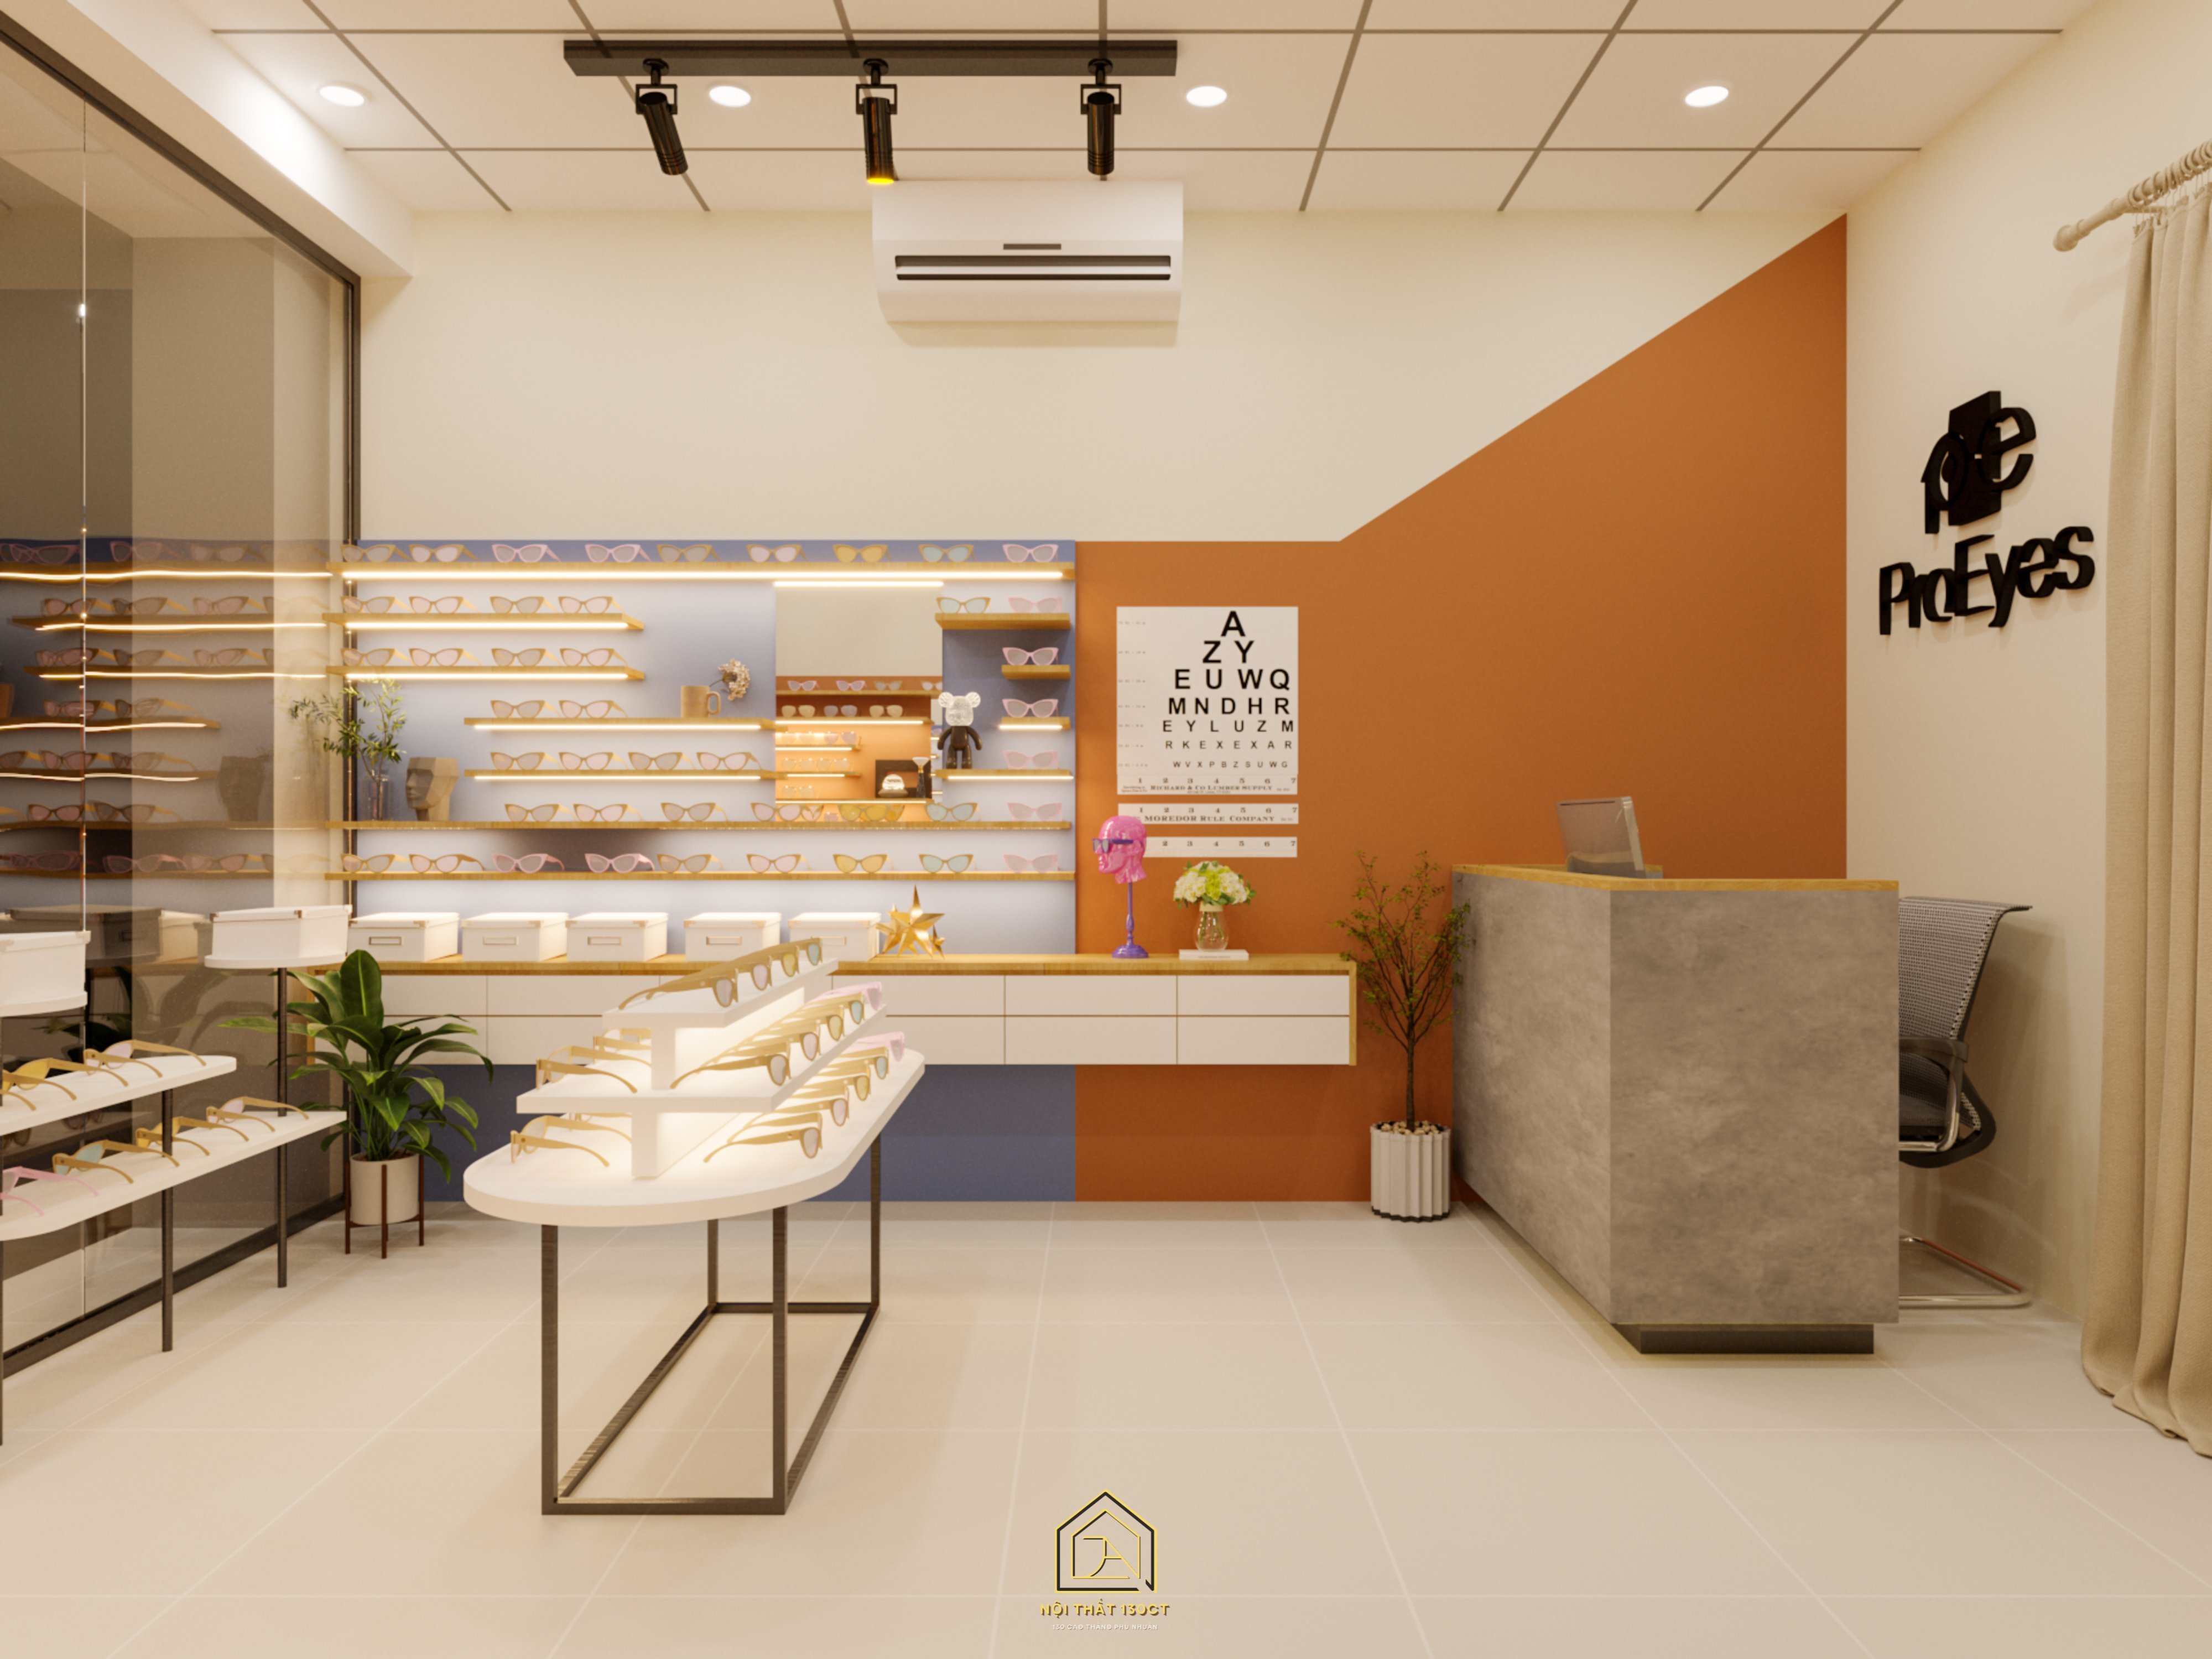 Thiết kế concept nội thất, cửa hàng mắt kính ProEyes